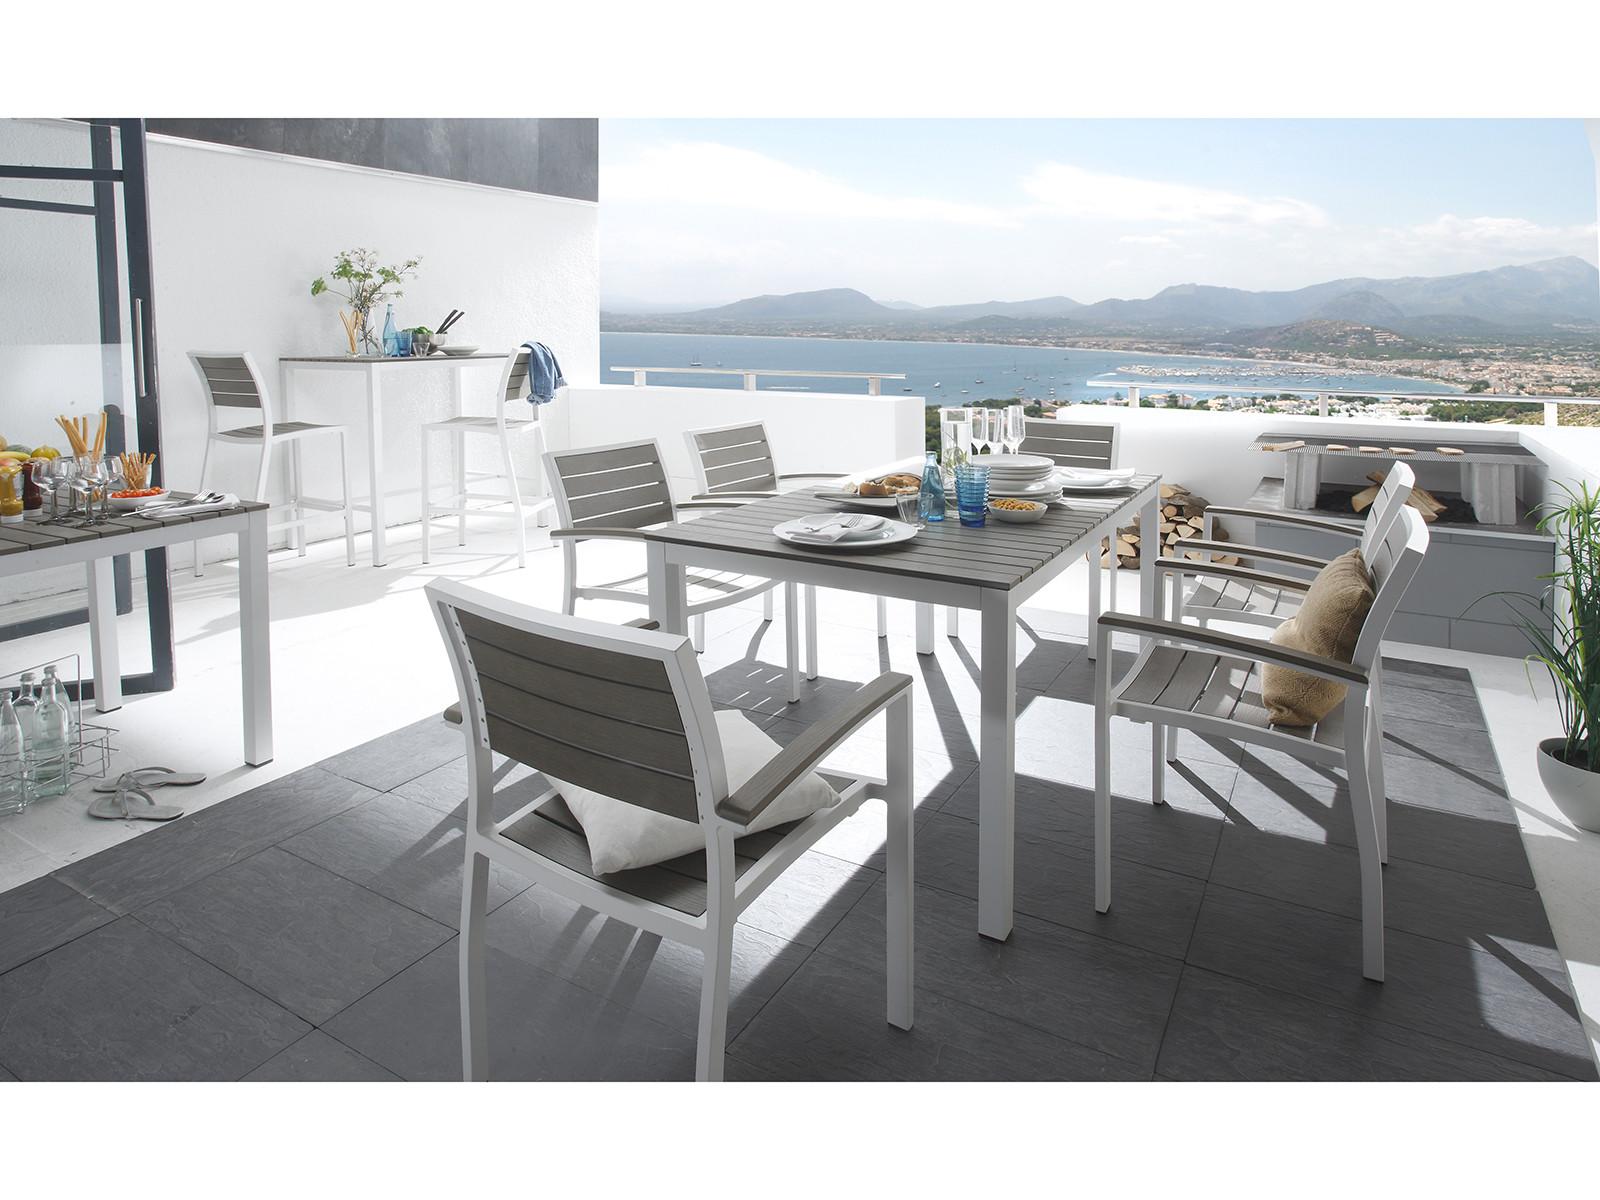 Moderne Eleganz und bester Komfort #terrasse #gartenmöbel #balkonmöbel #terrassenmöbel #weißesbalkonmöbel ©massivum